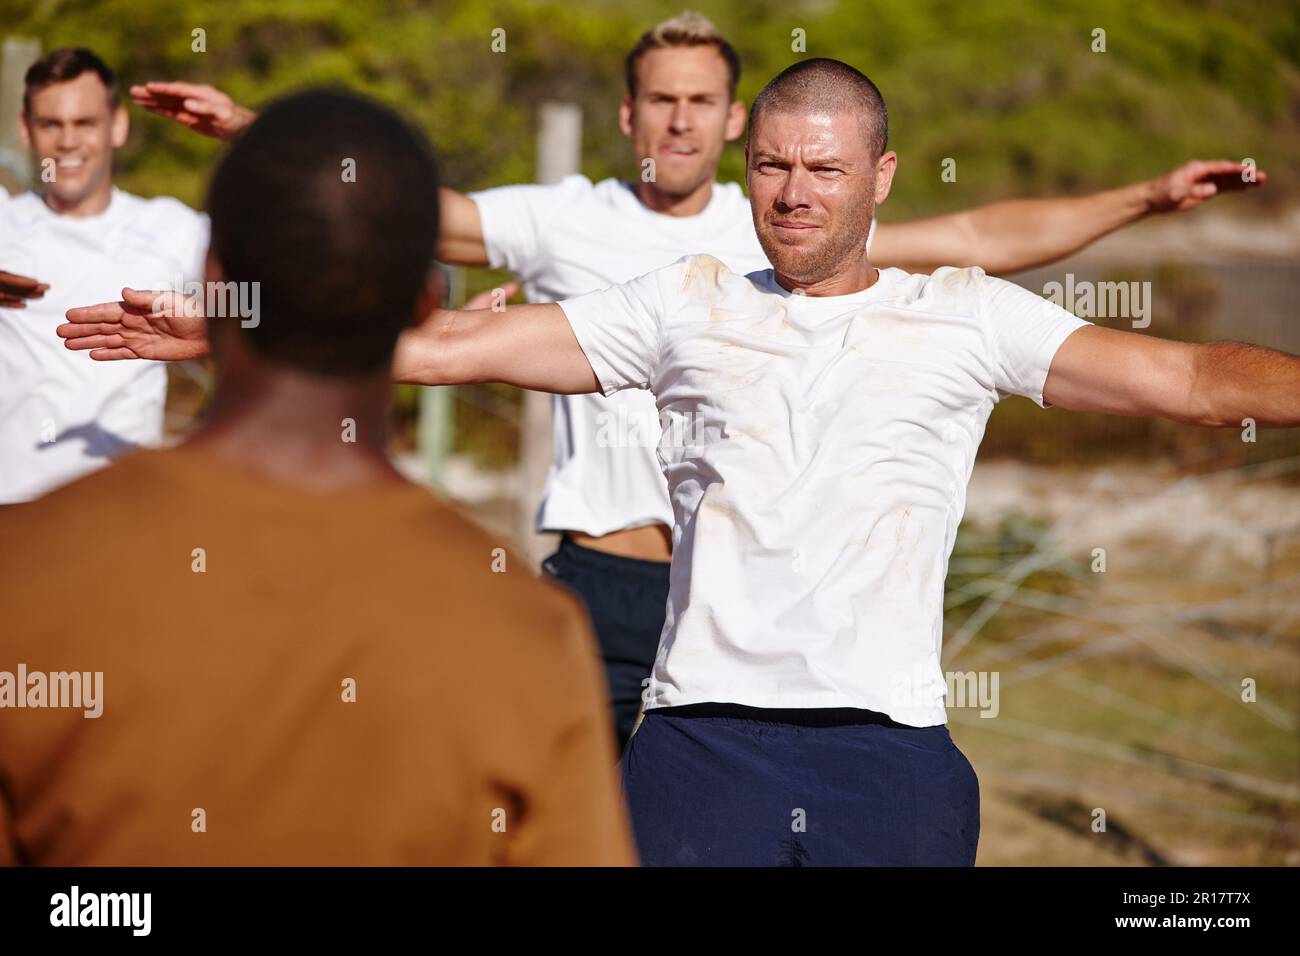 Bruciando quelle calorie al bootcamp. un gruppo di uomini che fanno esercizi in un bootcamp militare. Foto Stock